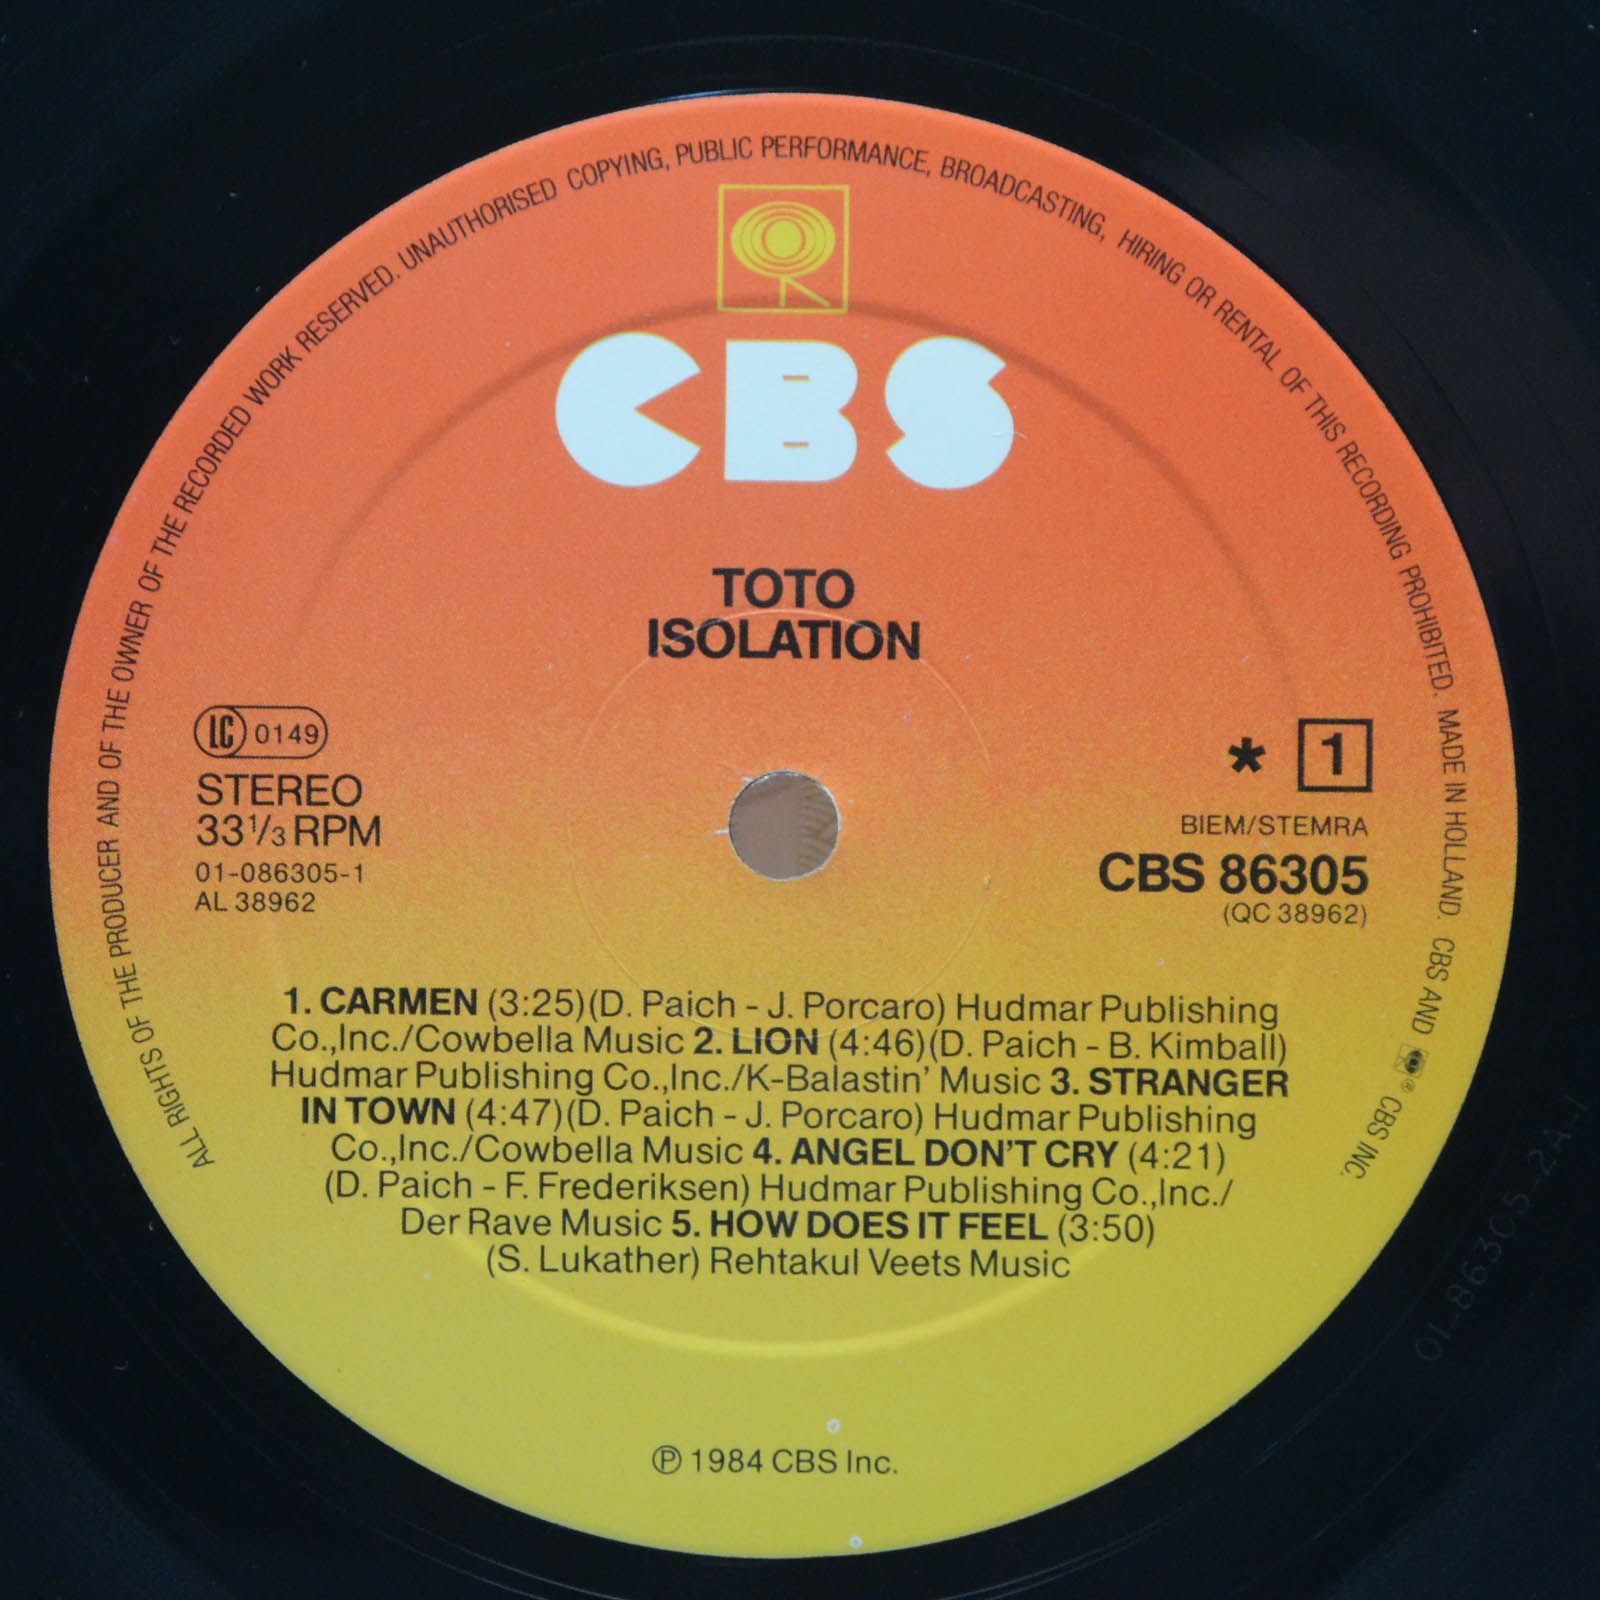 Toto — Isolation, 1984